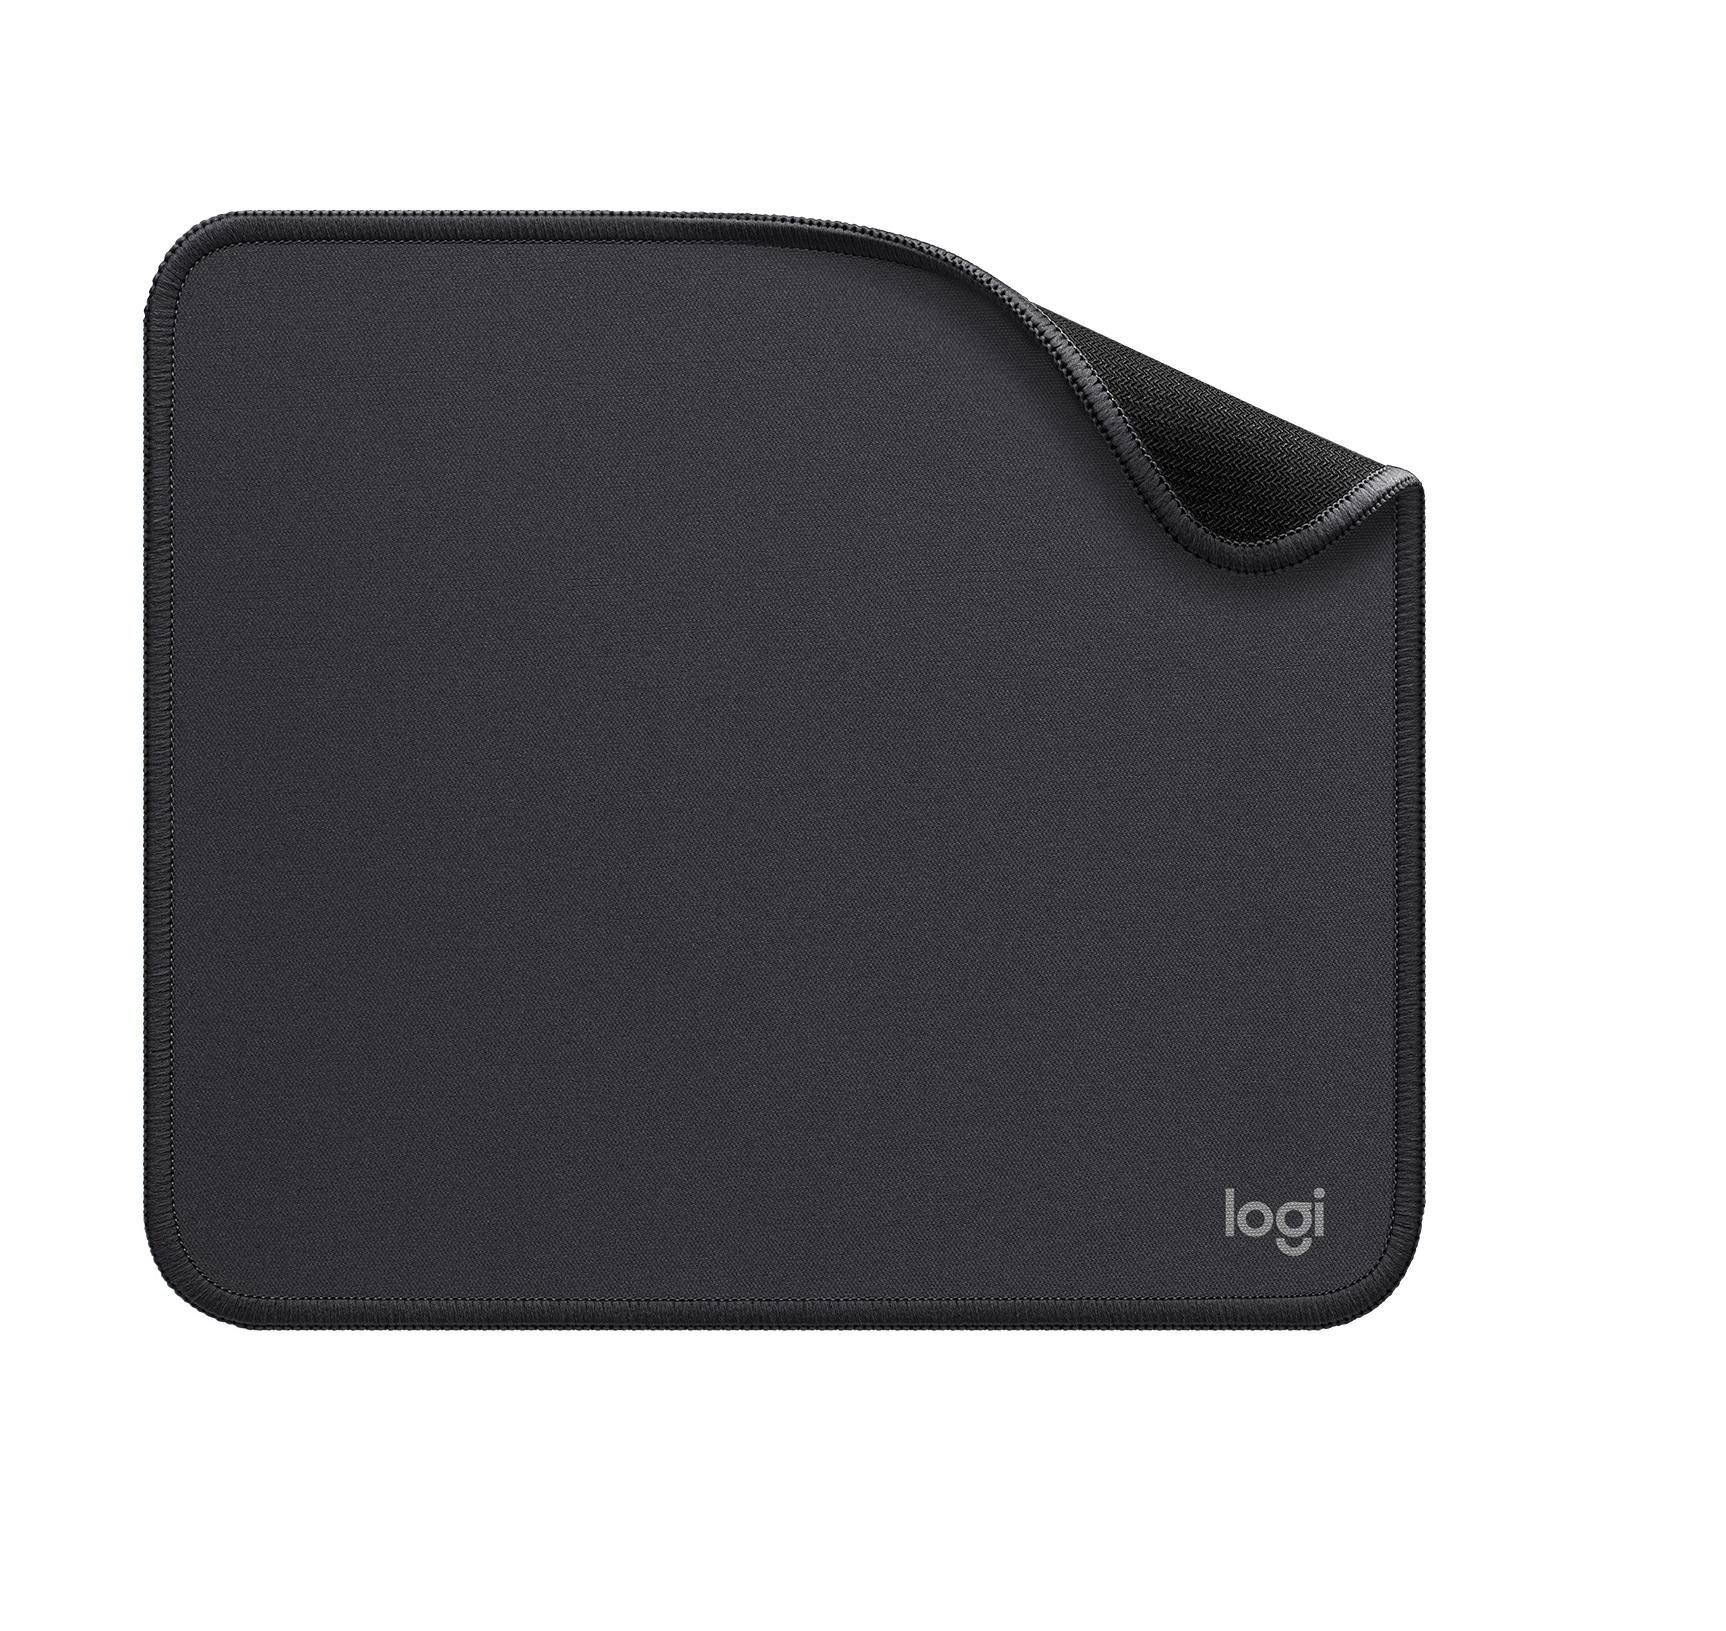 Logitech Mouse pad MPADGY / 956-000049 Black